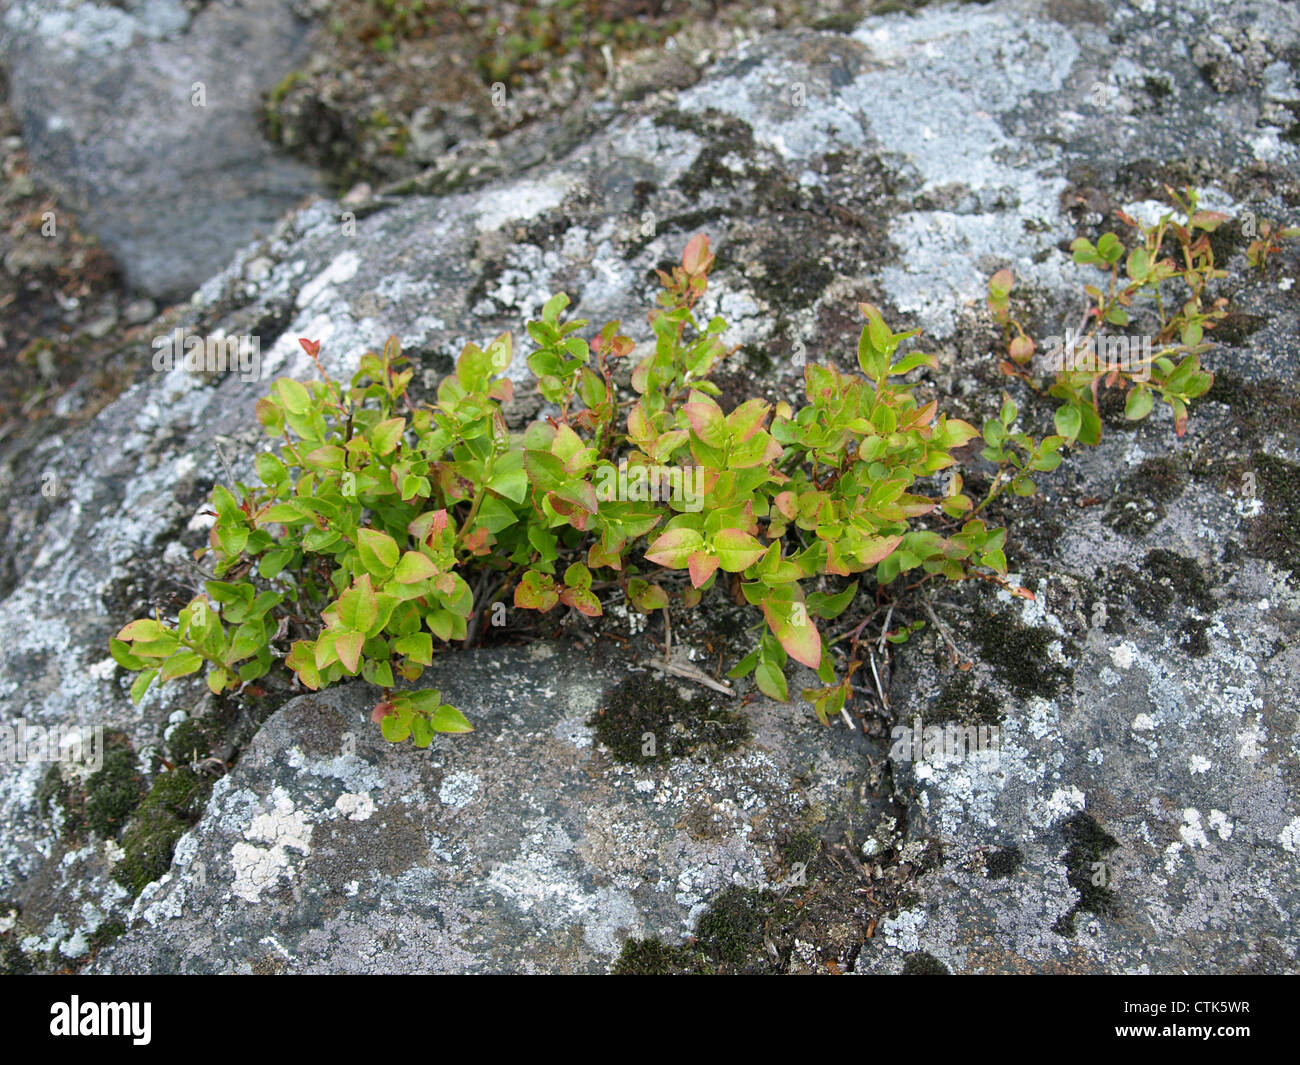 blueberry shrubs on a rock / Heidelbeersträucher auf einem Felsen Stock Photo